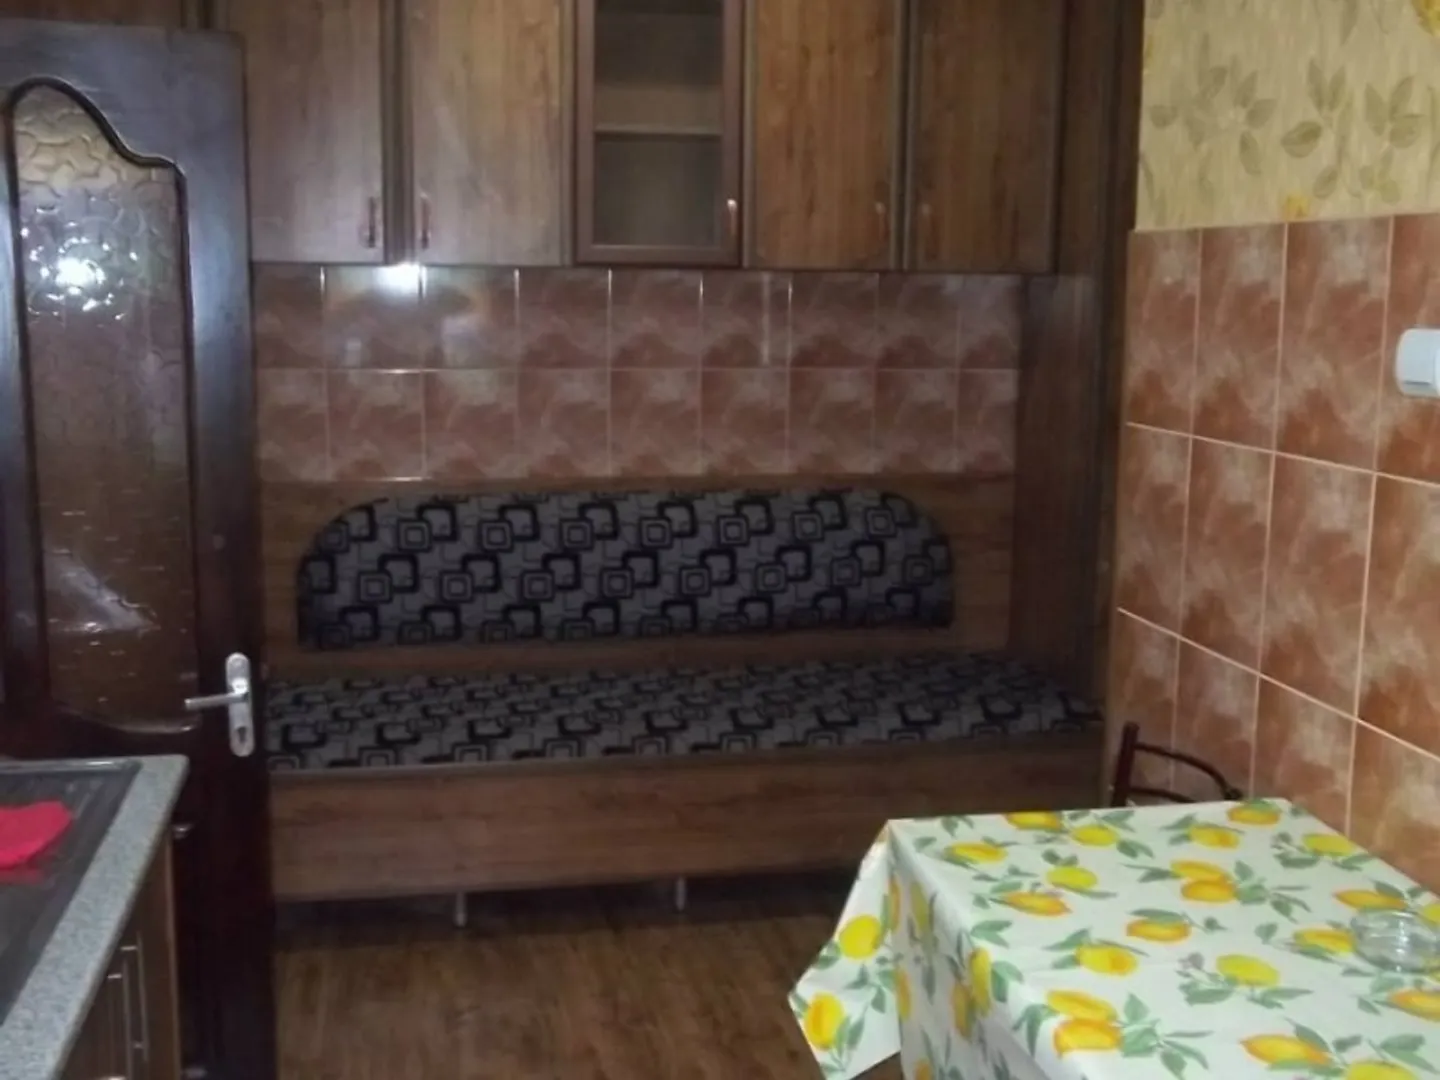 диванчик встроенный в кухонную гарнитуру